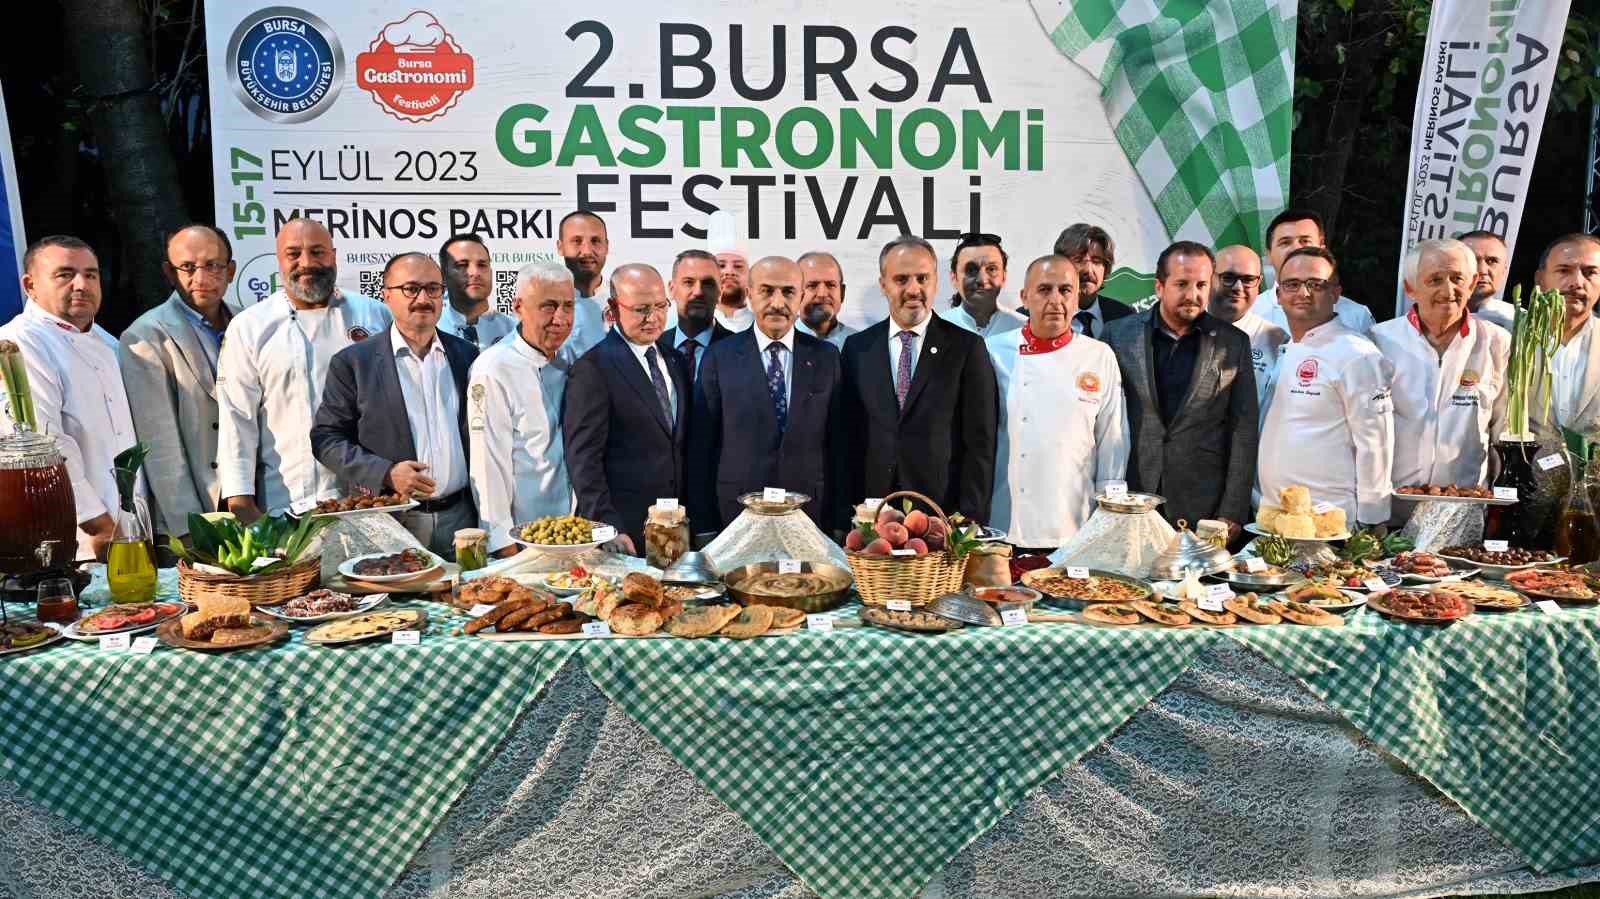 Bursa’da Gastronomi Festivali 15 Eylül’de başlıyor